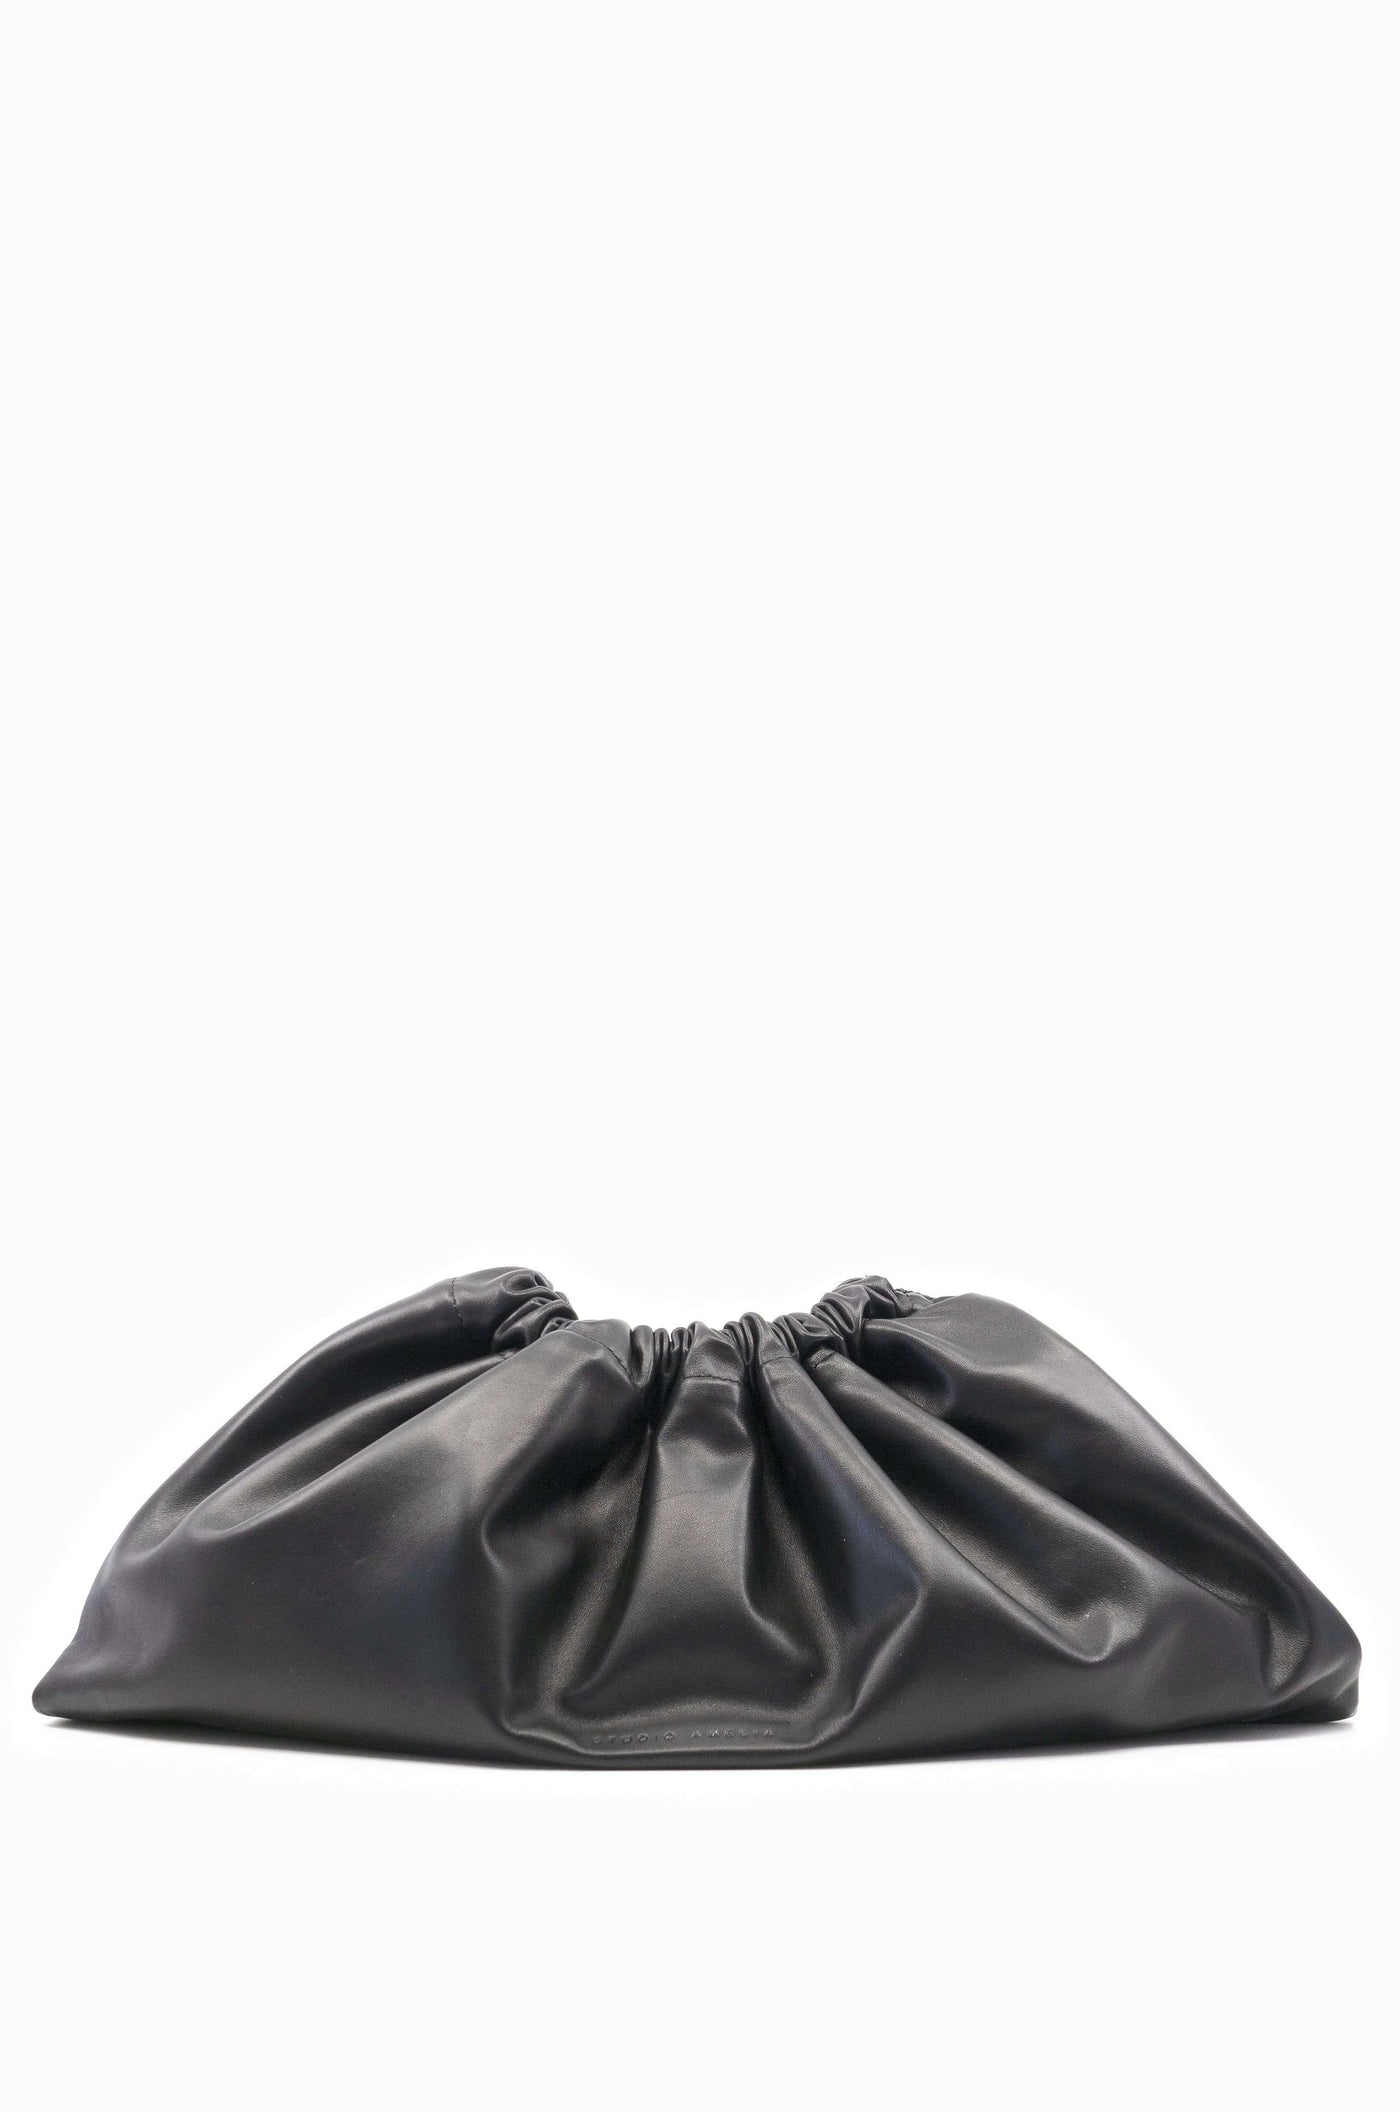 Maxi Drawstring Bag | Black